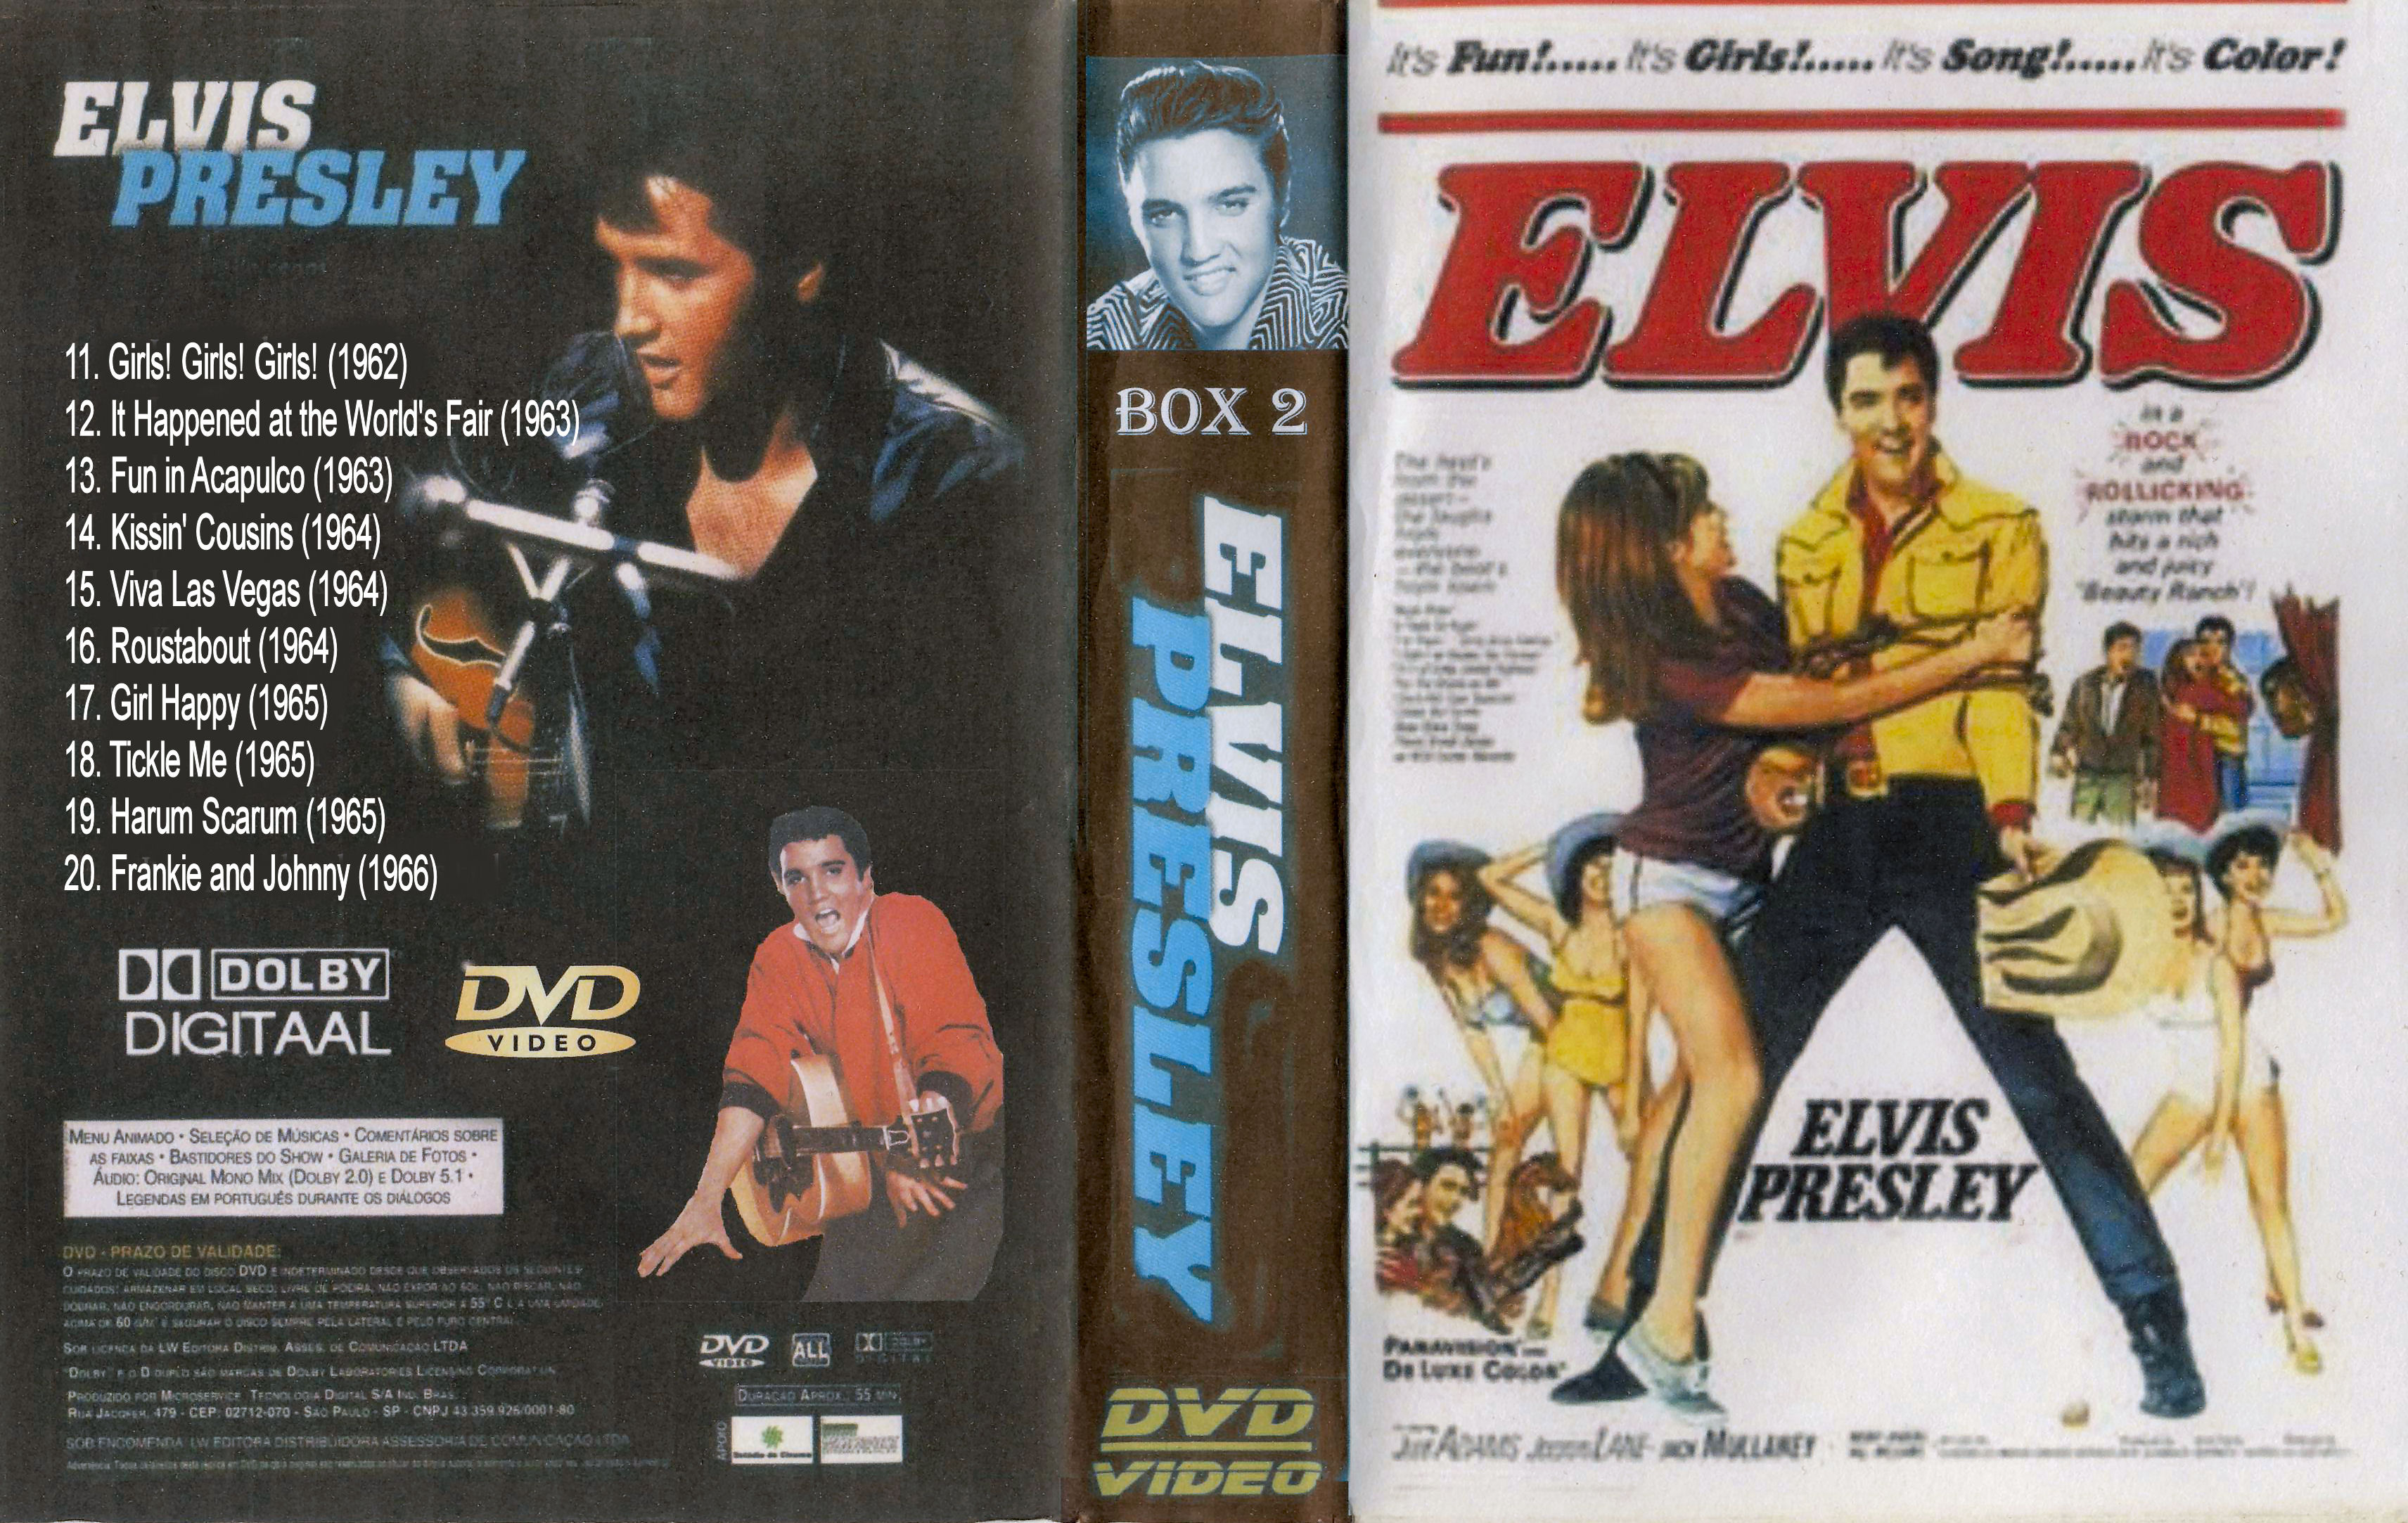 Elvis Presley Collectie ( 18. Tickle Me (1965) DvD 18 van 31